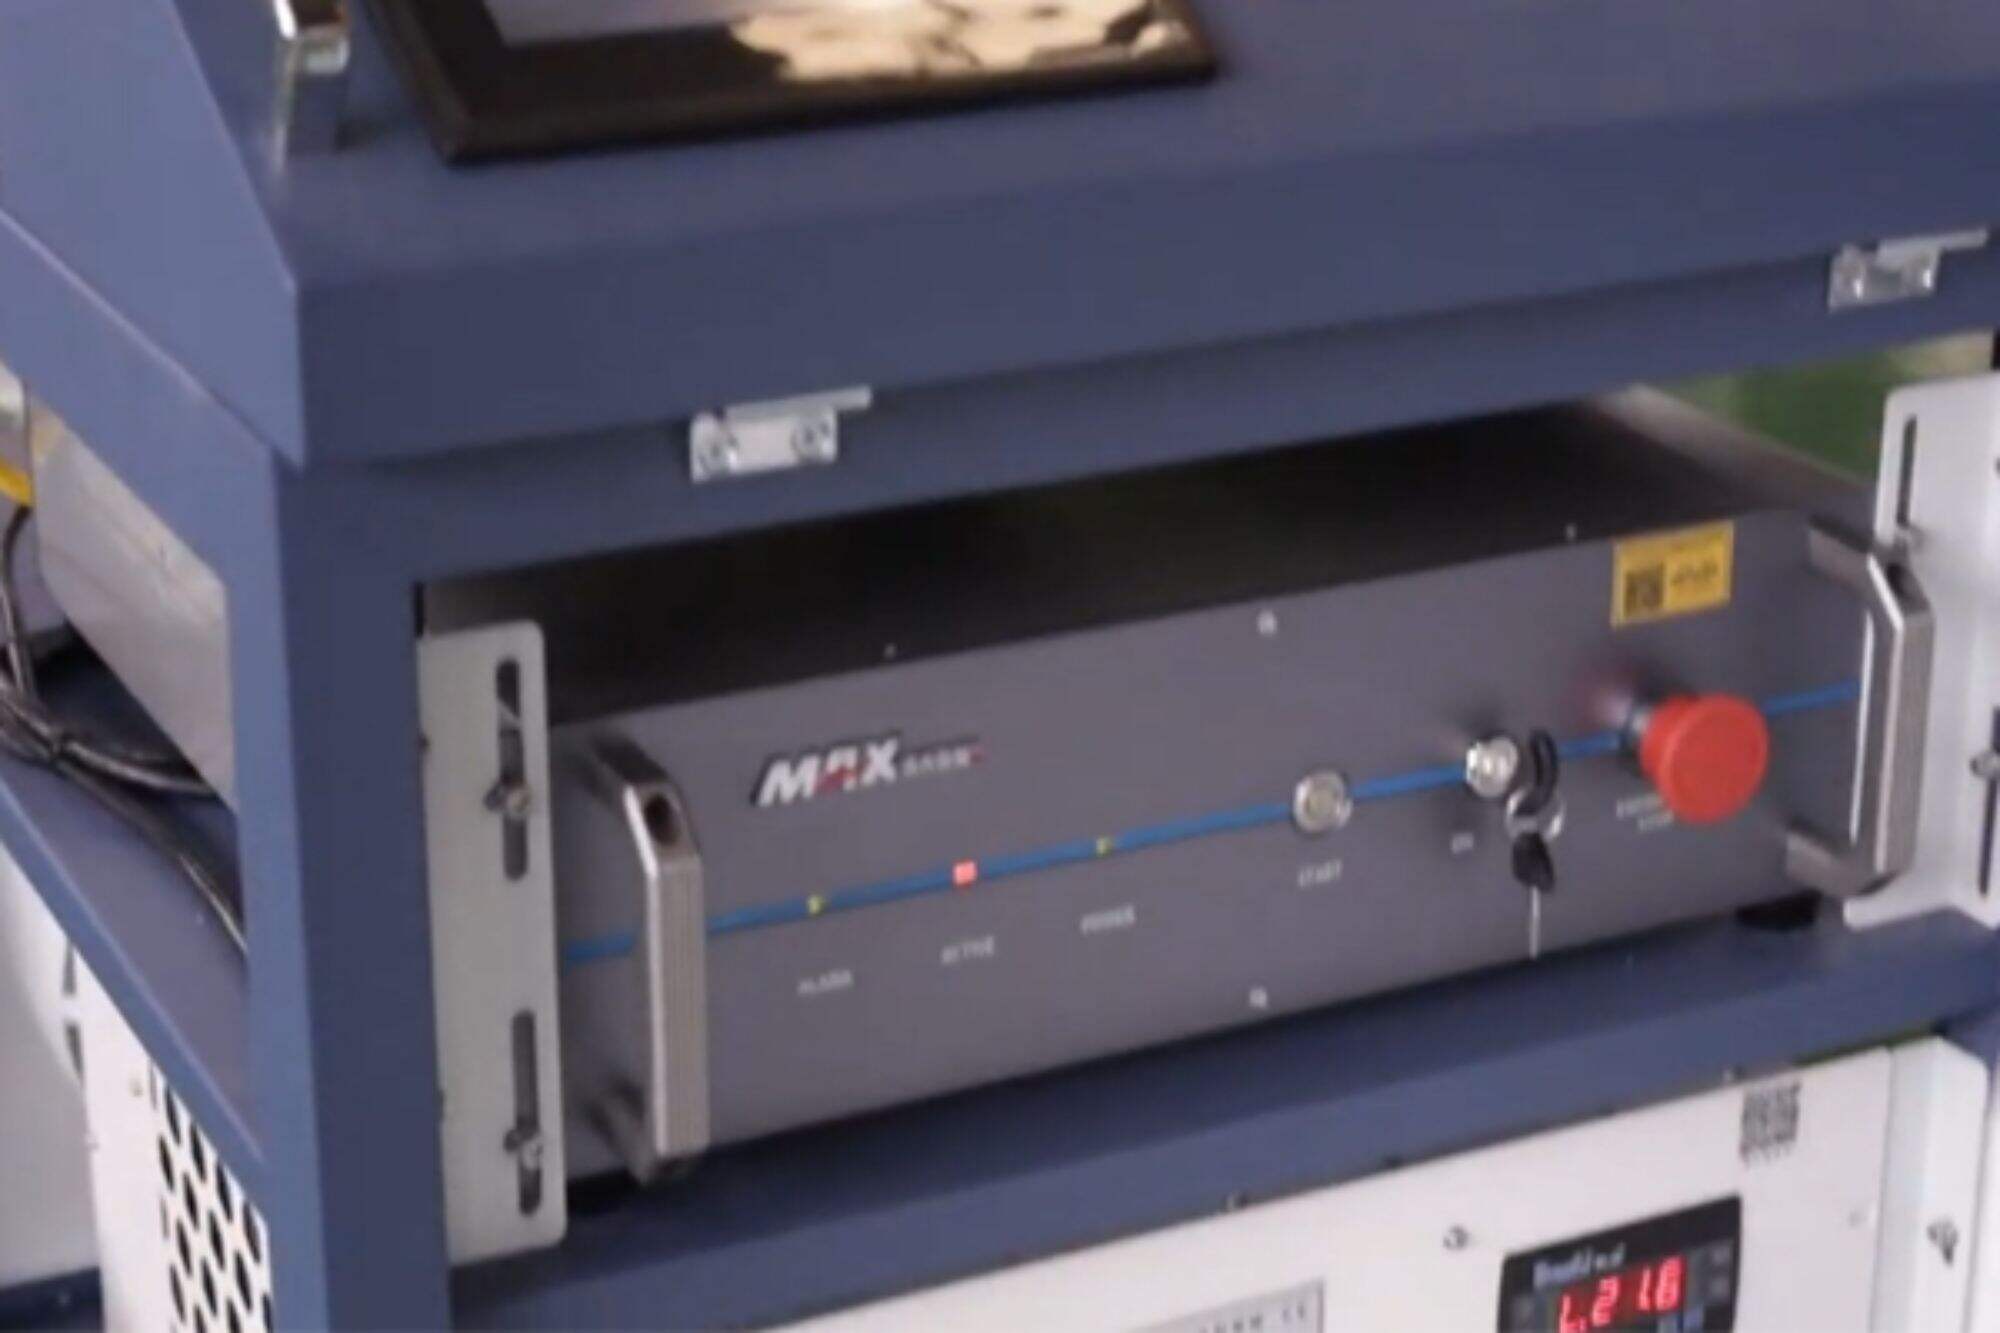 เครื่องทำความสะอาดเลเซอร์ DMK CW 2000W อุปกรณ์จะได้รับการทดสอบล่วงหน้าก่อนจัดส่ง